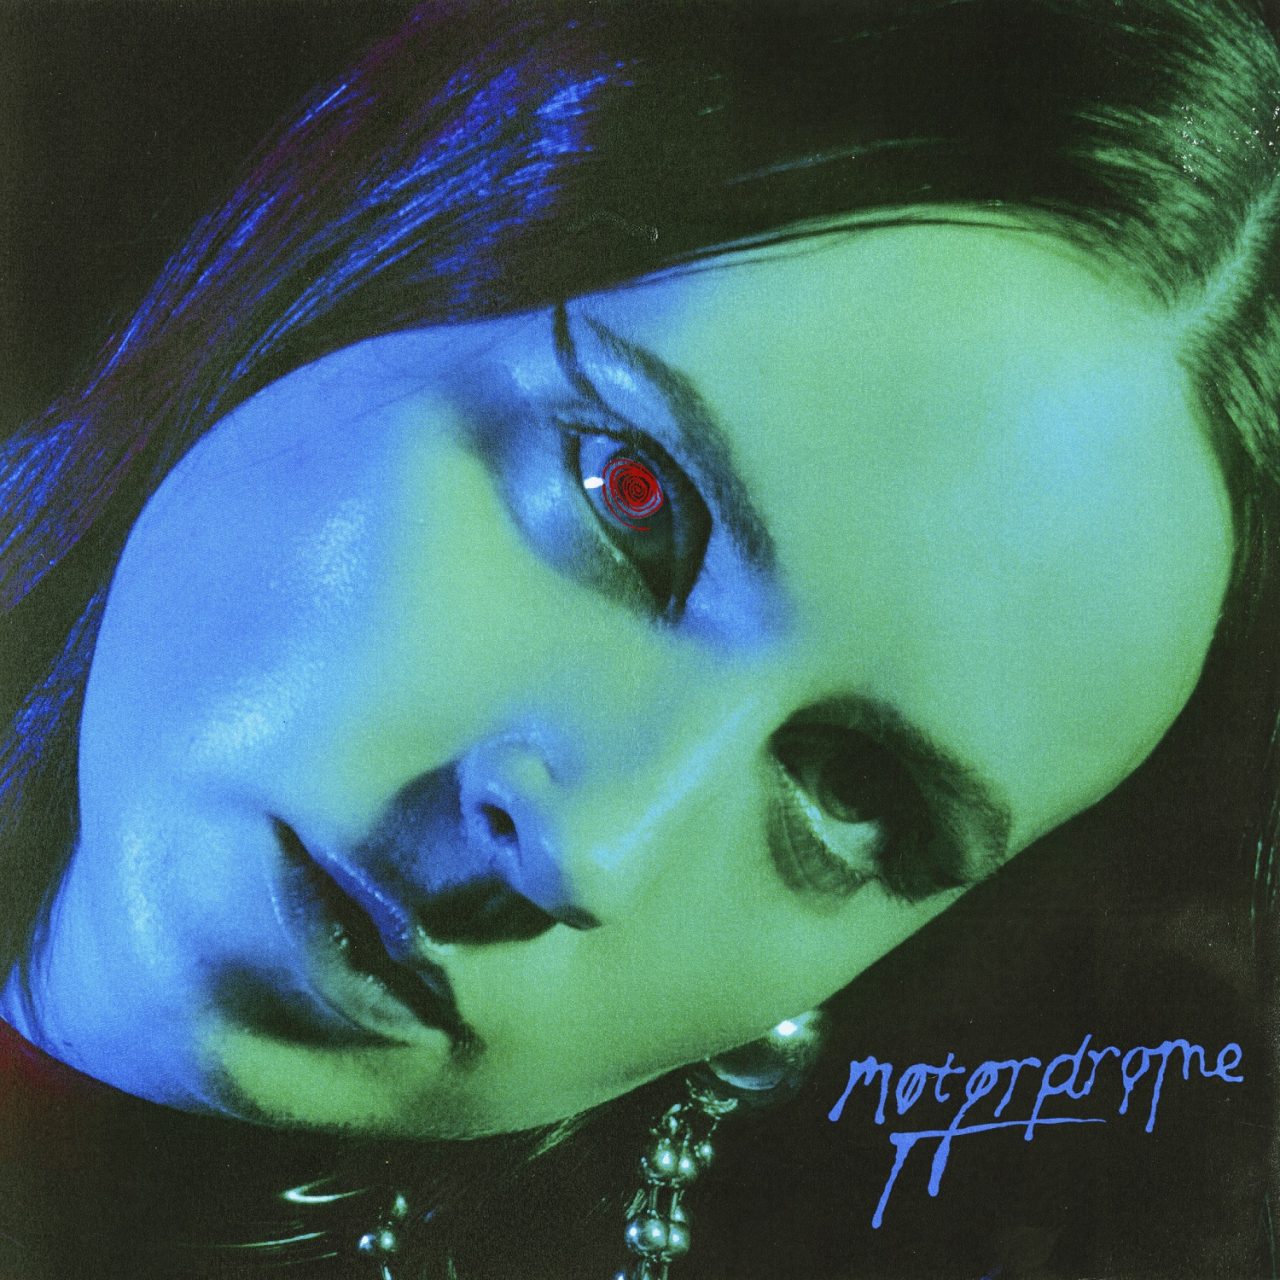 Das Albumcover "Motordrome" von MØ zeigt die dänische Sängerin in Grün- und Blautönen. Ihr rechtes Auge hat eine rote Pupille.